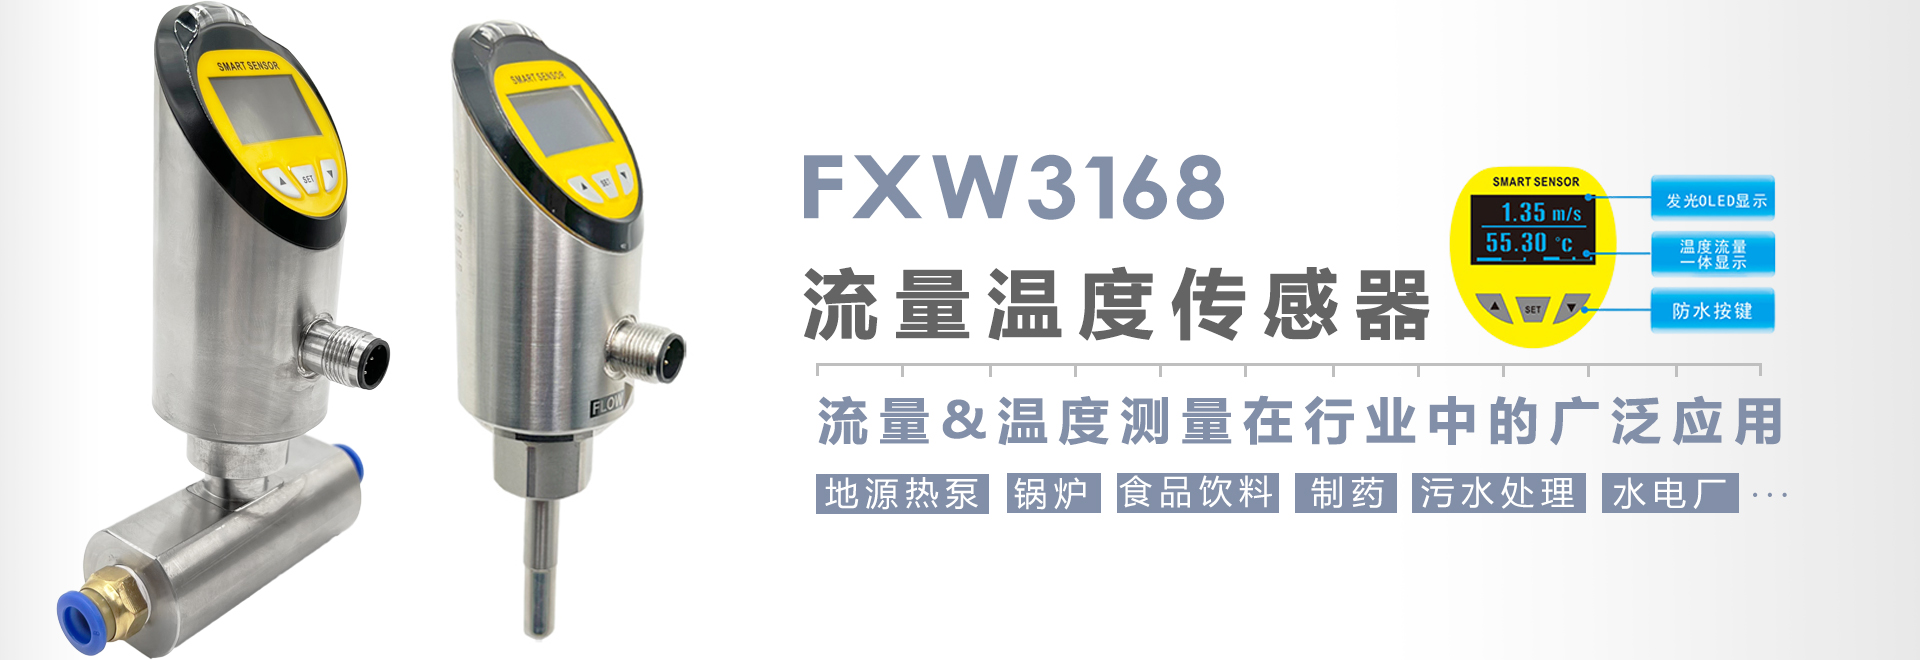 流量开关FXW-3168在食品和制药中的流量&温度测量